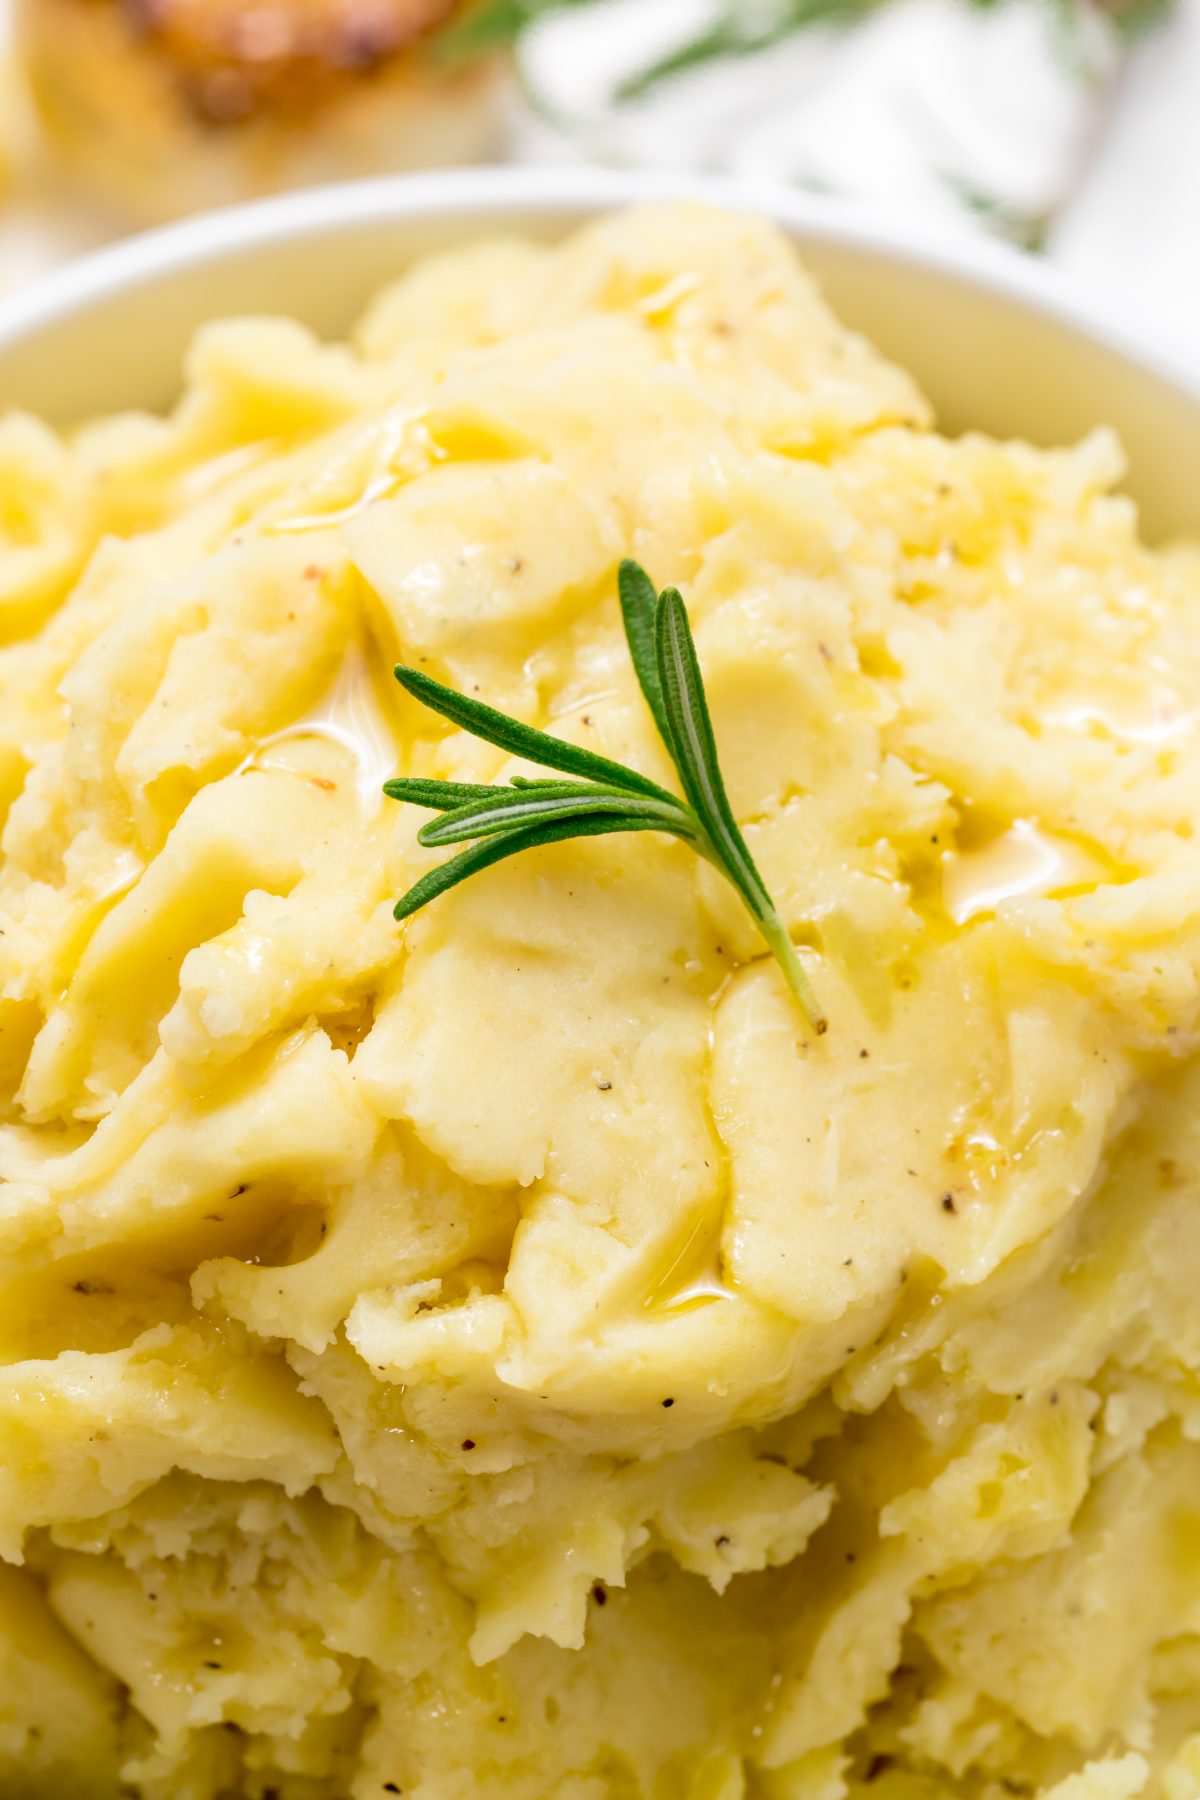 Roasted garlic mashed potatoes